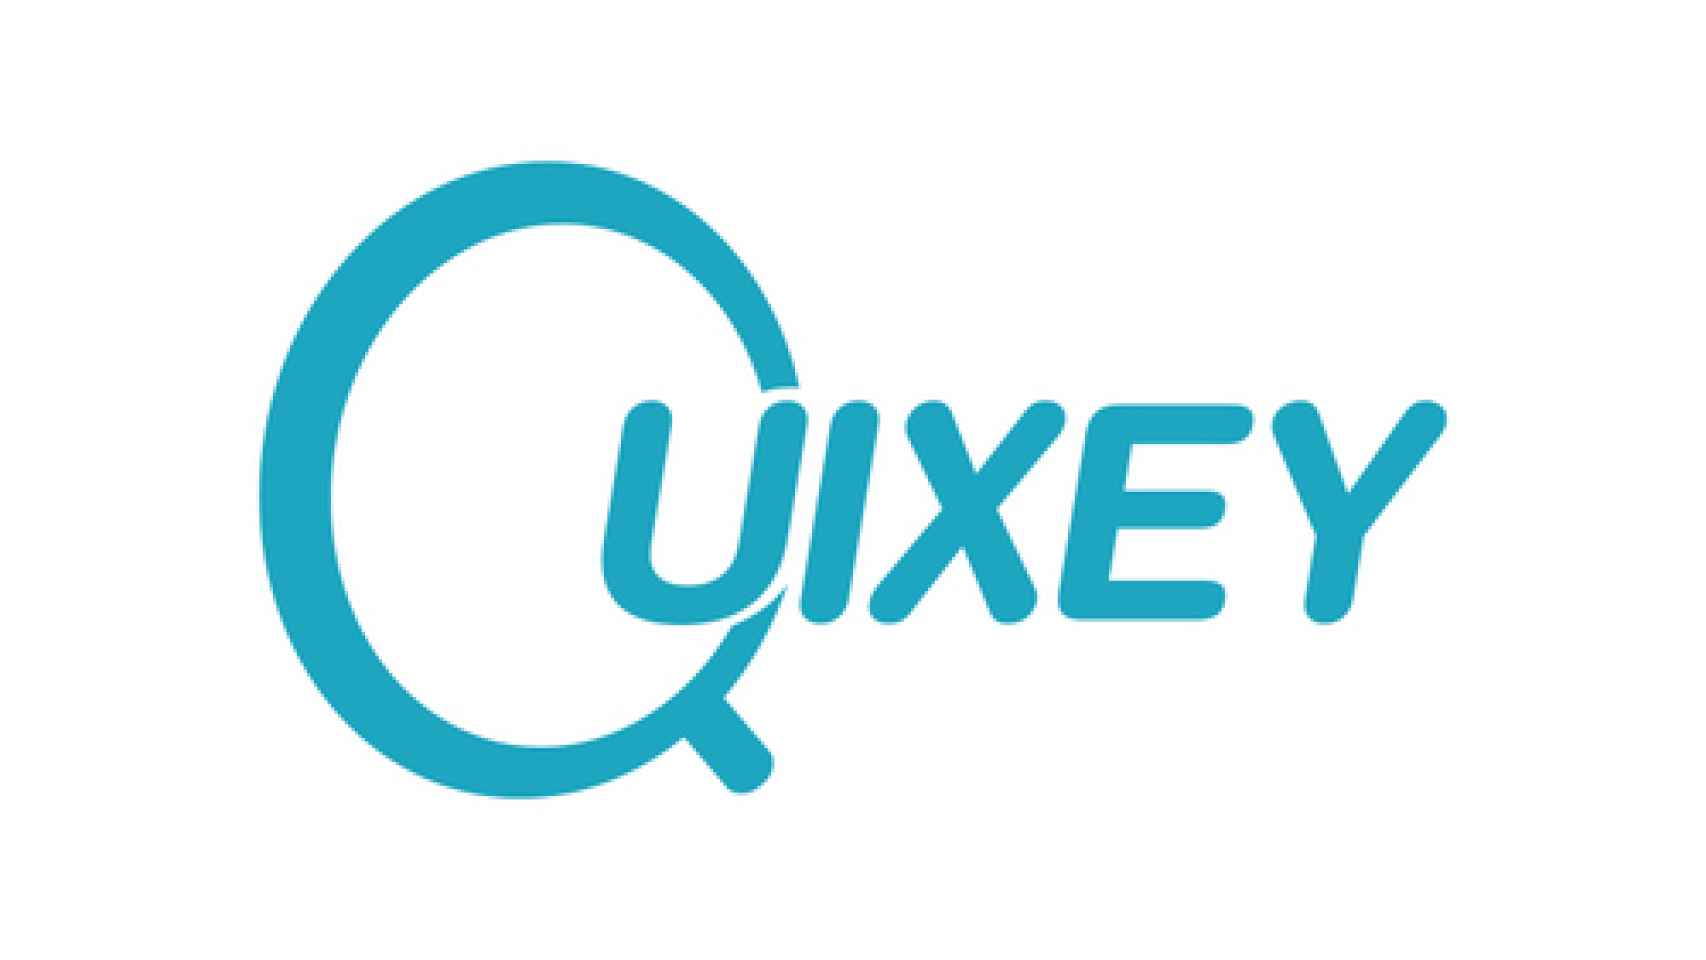 Quixey_Teal_Logo